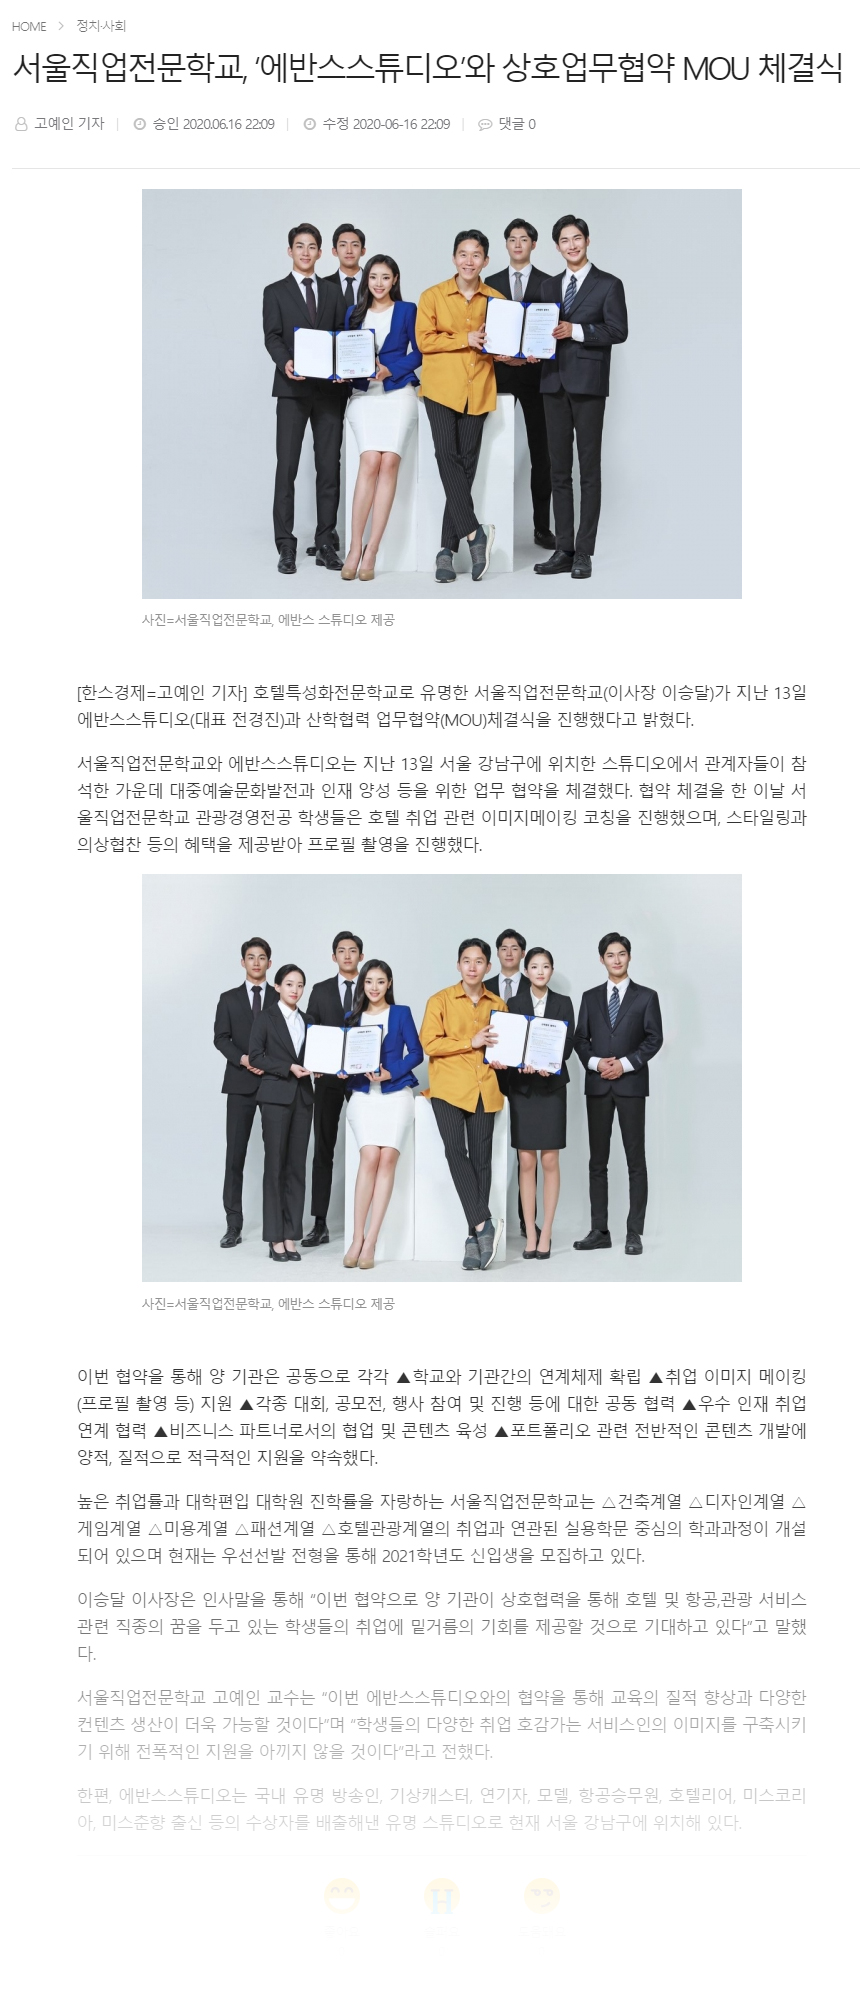 [한스경제] 서울직업전문학교, ‘에반스스튜디오’와 상호업무협약 MOU 체결식